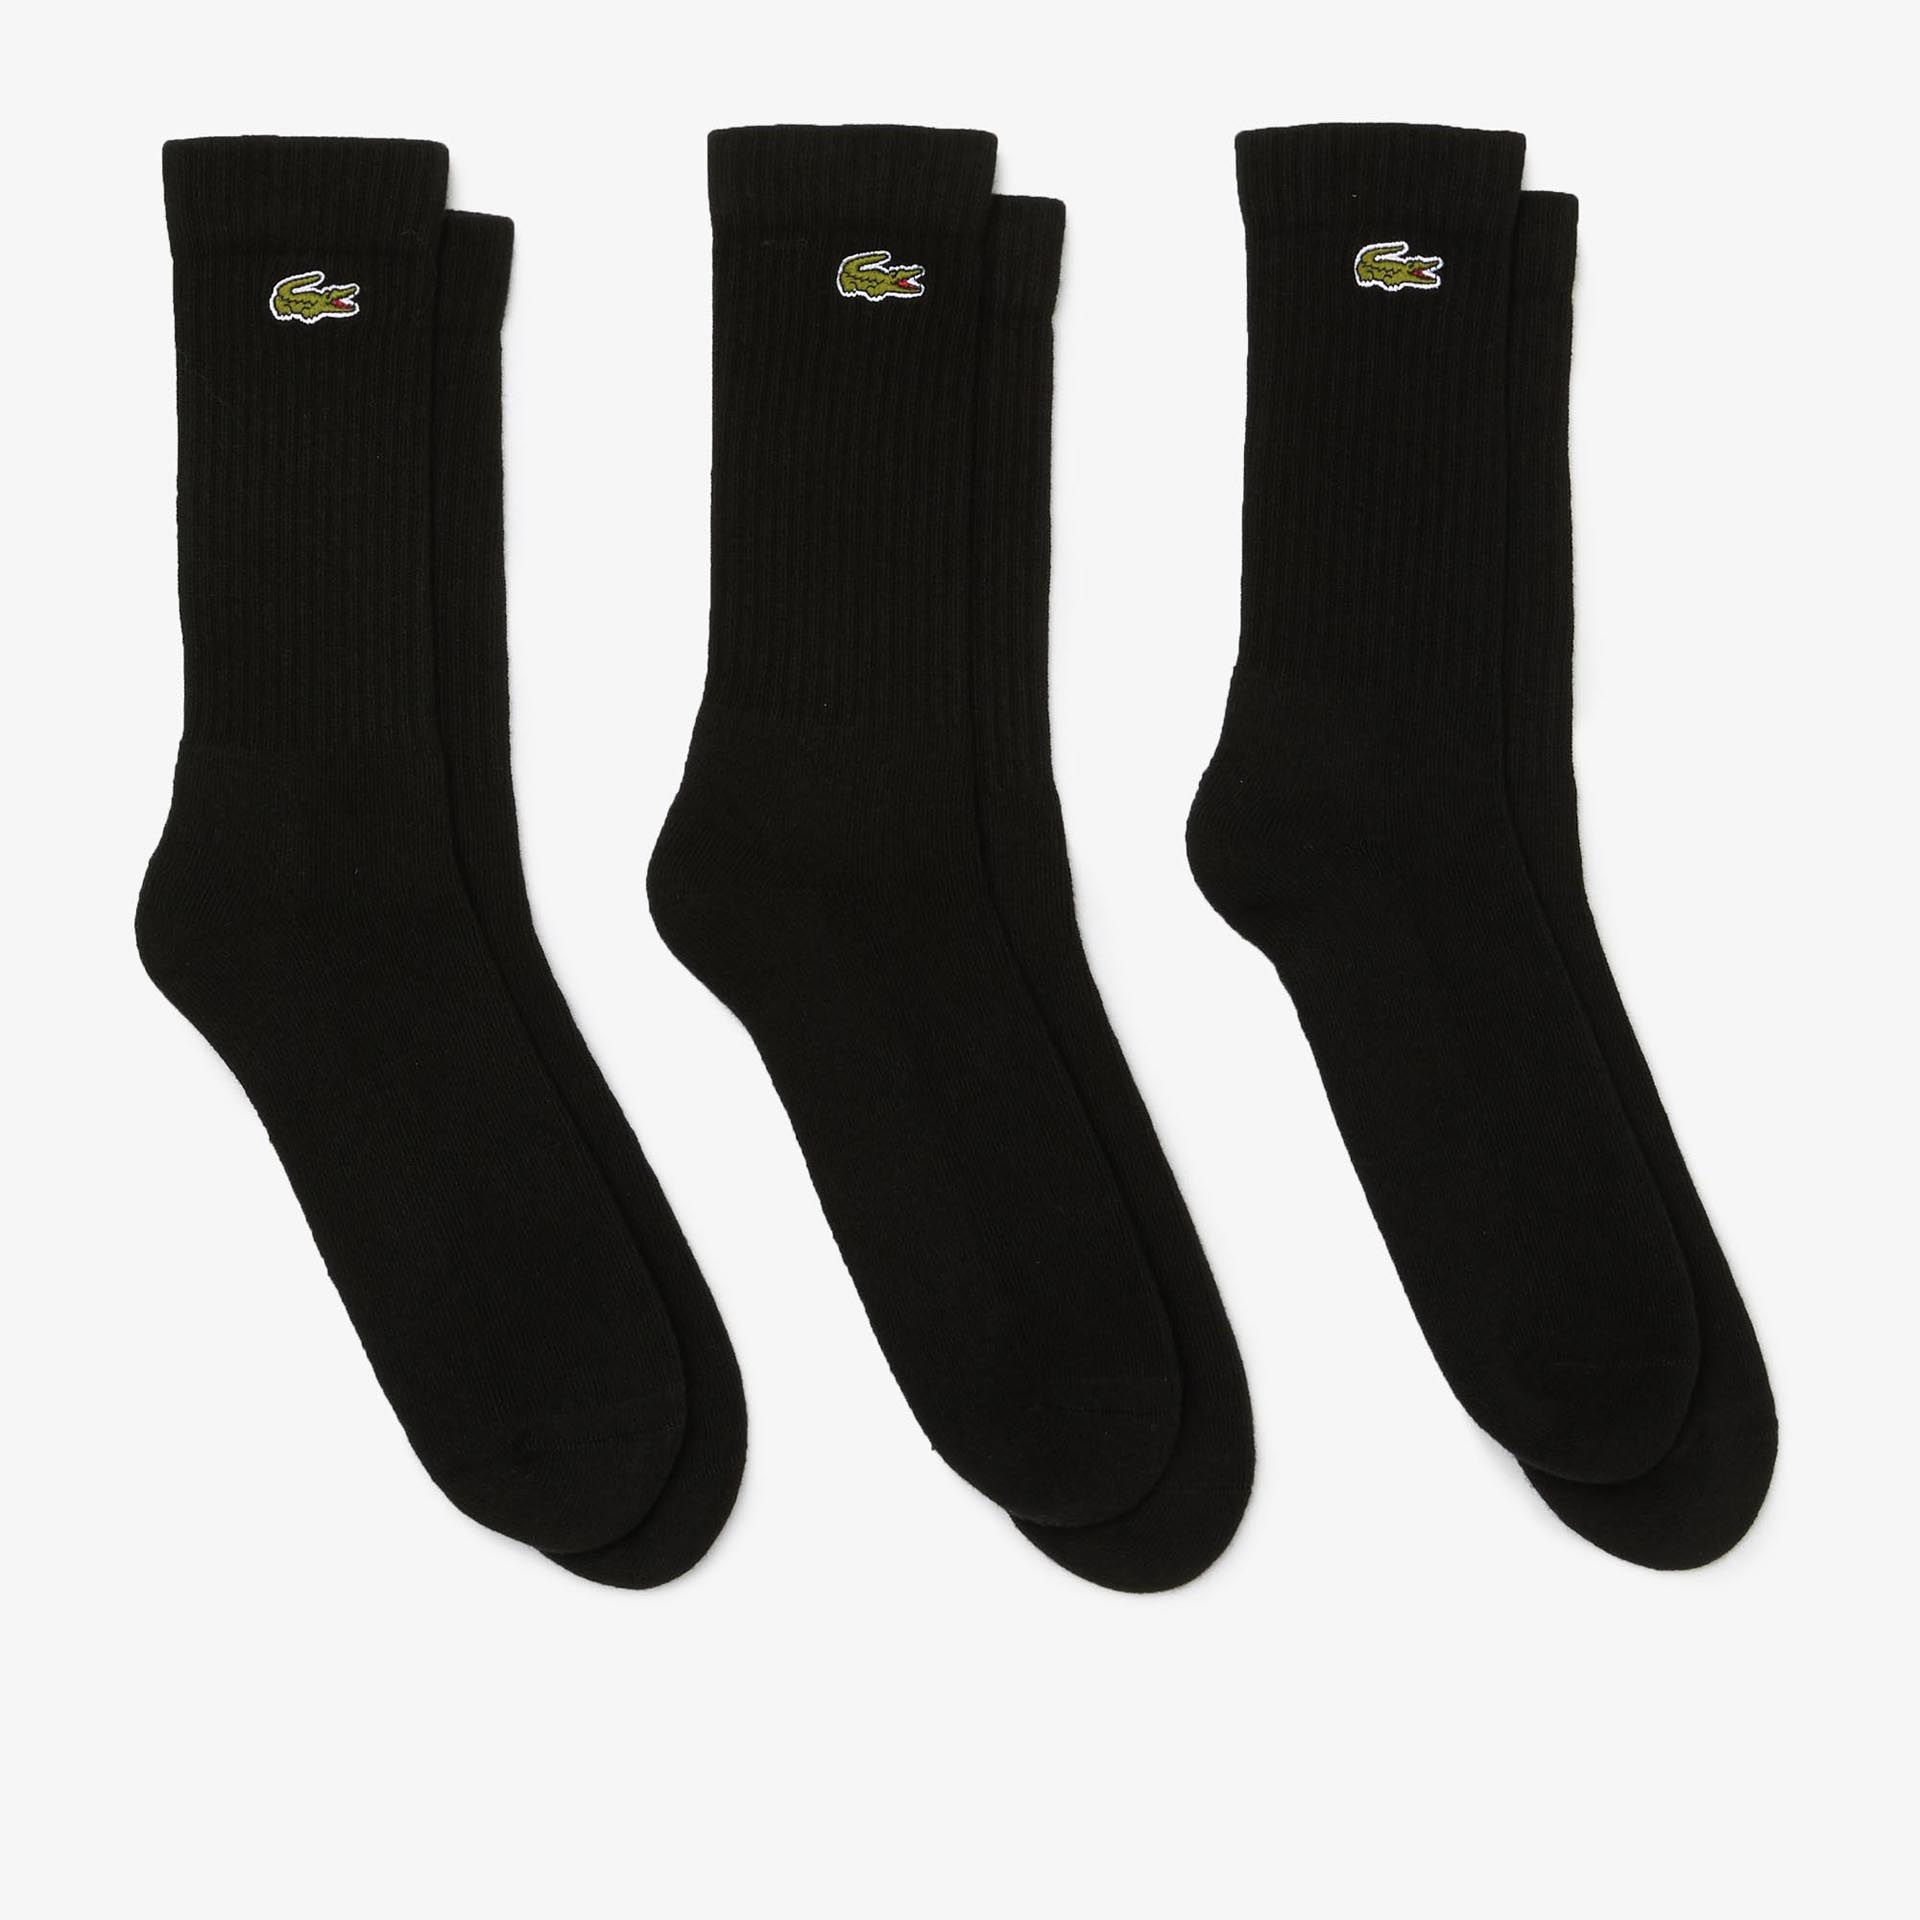 Lacoste Crew Socks Black/Black/Black